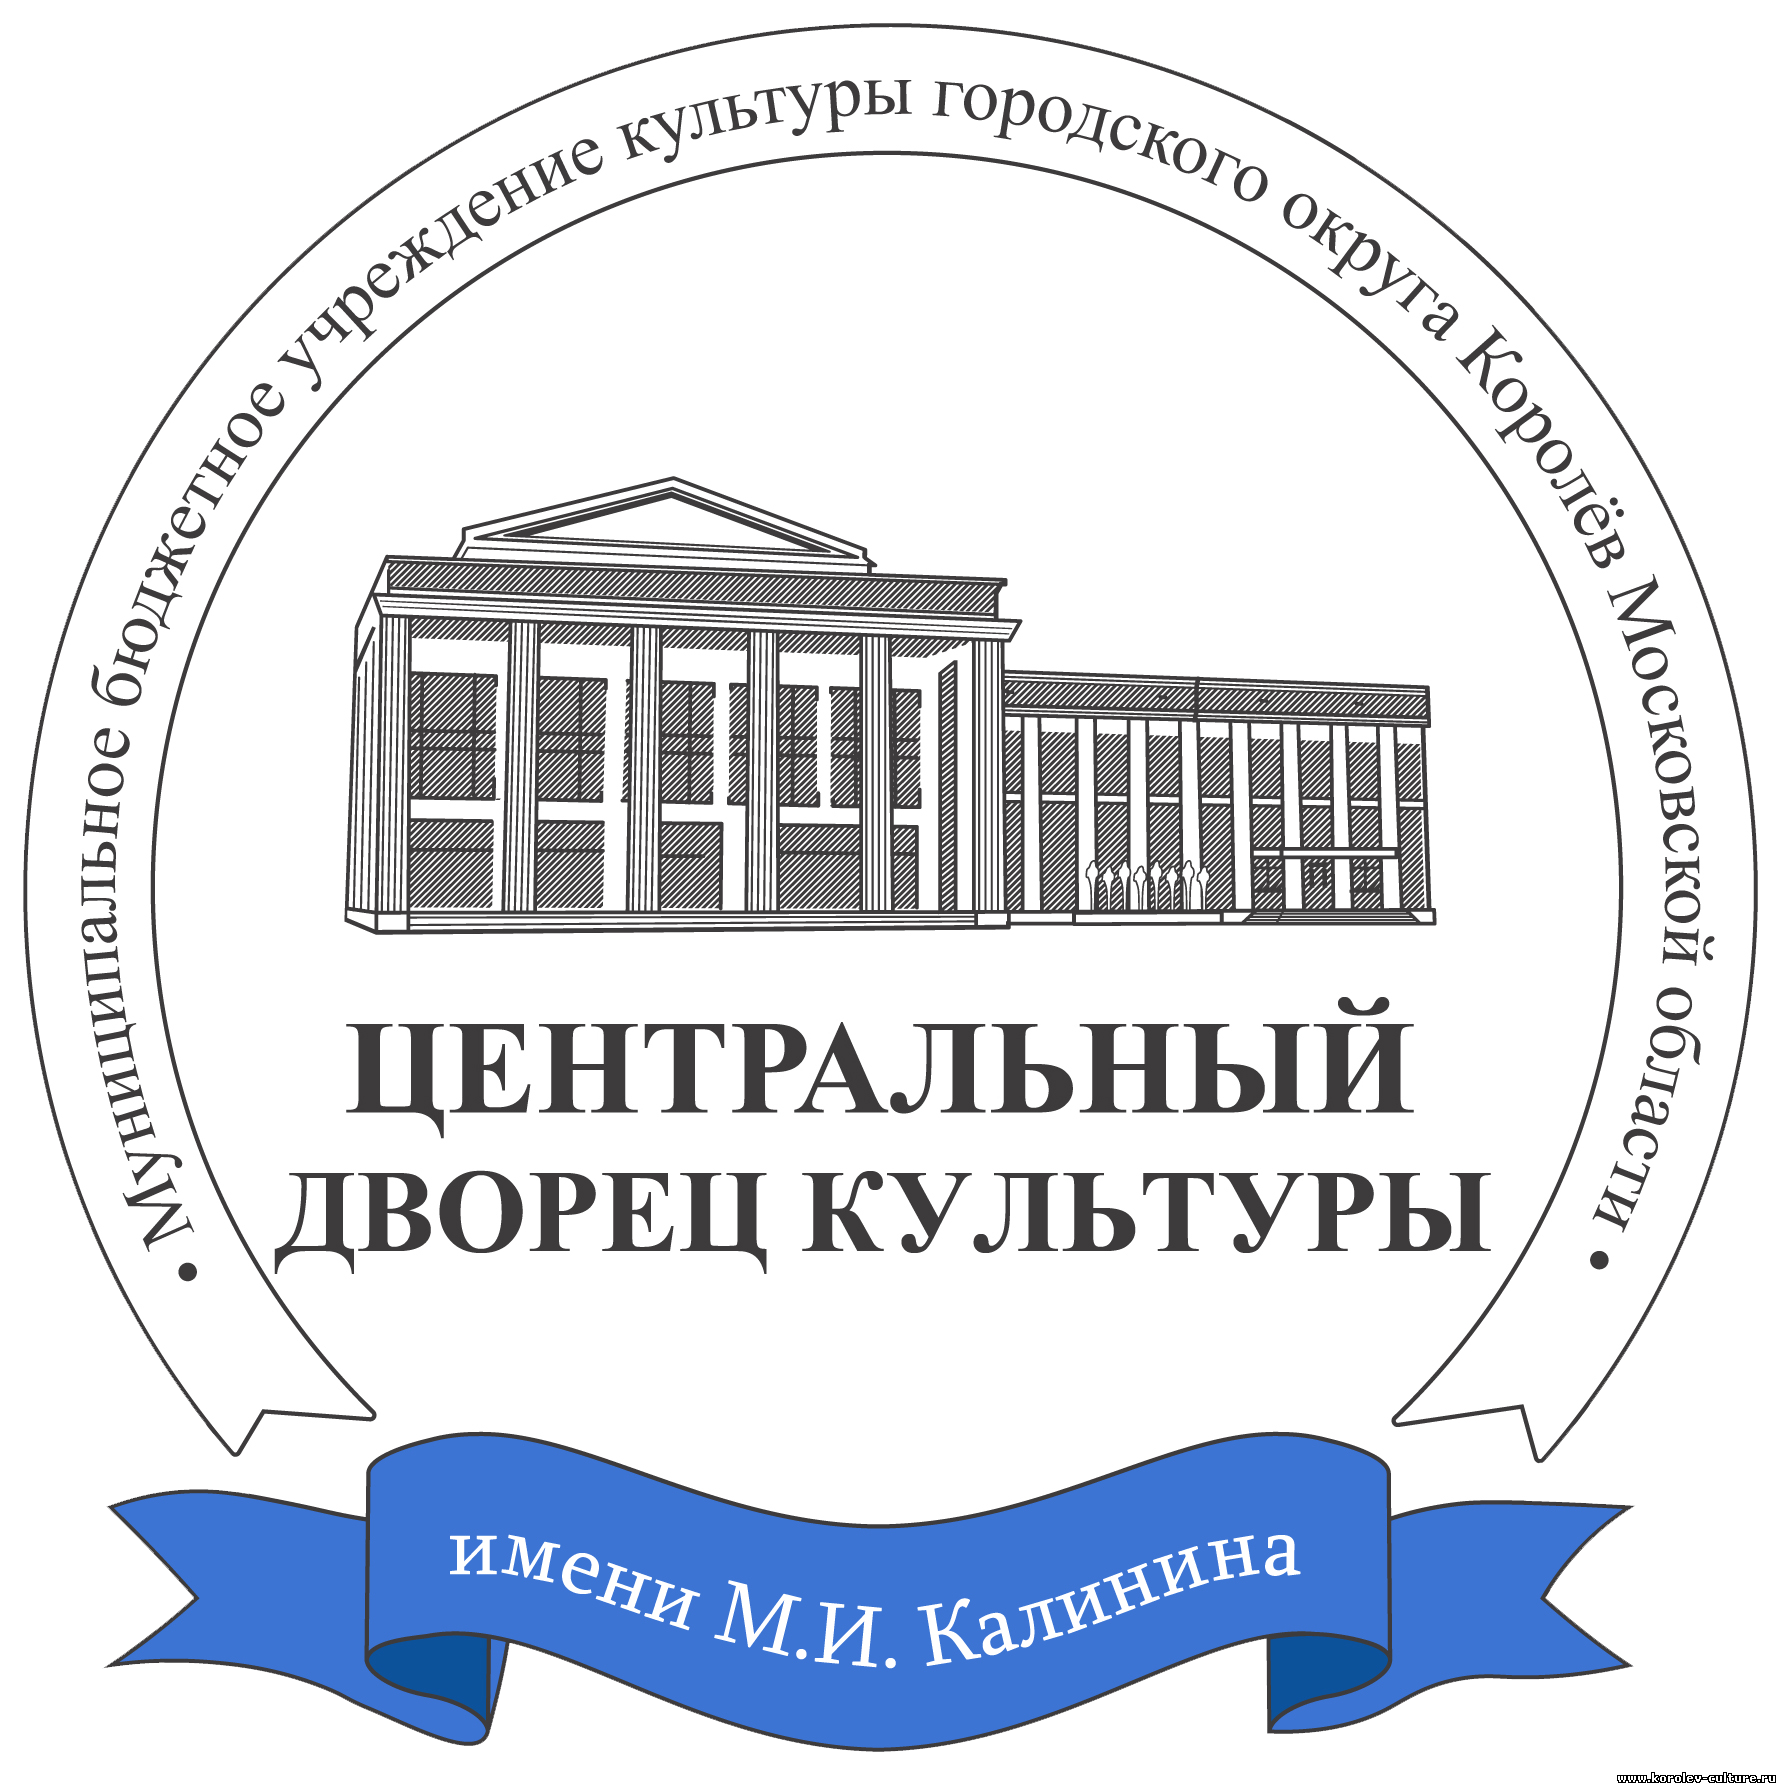 Центральный Дворец культуры им. М.И. Калинина